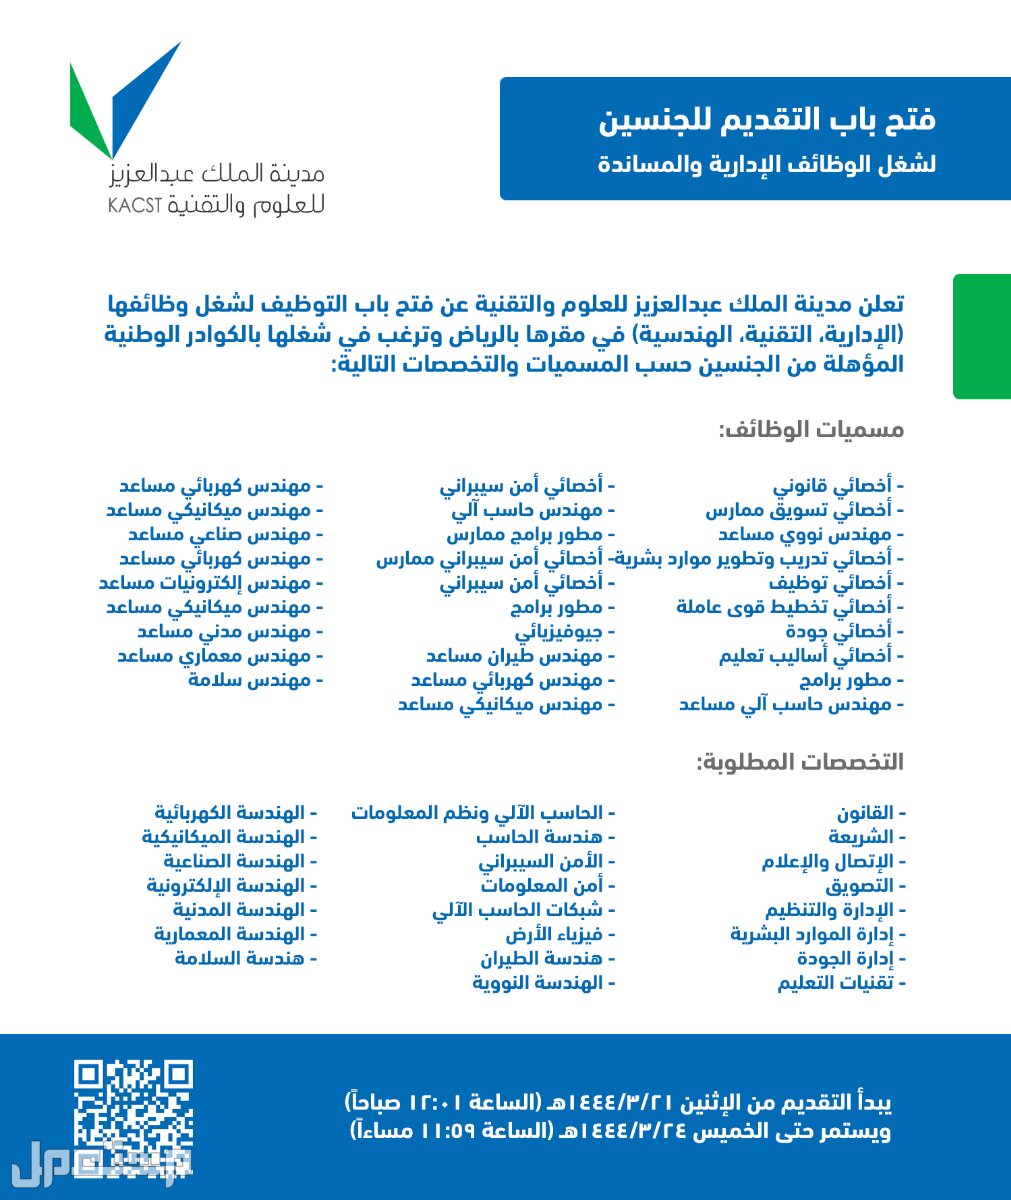 كل ما تحتاج إلى معرفته حول وظائف مدينة الملك عبدالعزيز للعلوم والتقنية وظائف مدينة الملك عبدالعزيز للعلوم والتقنية